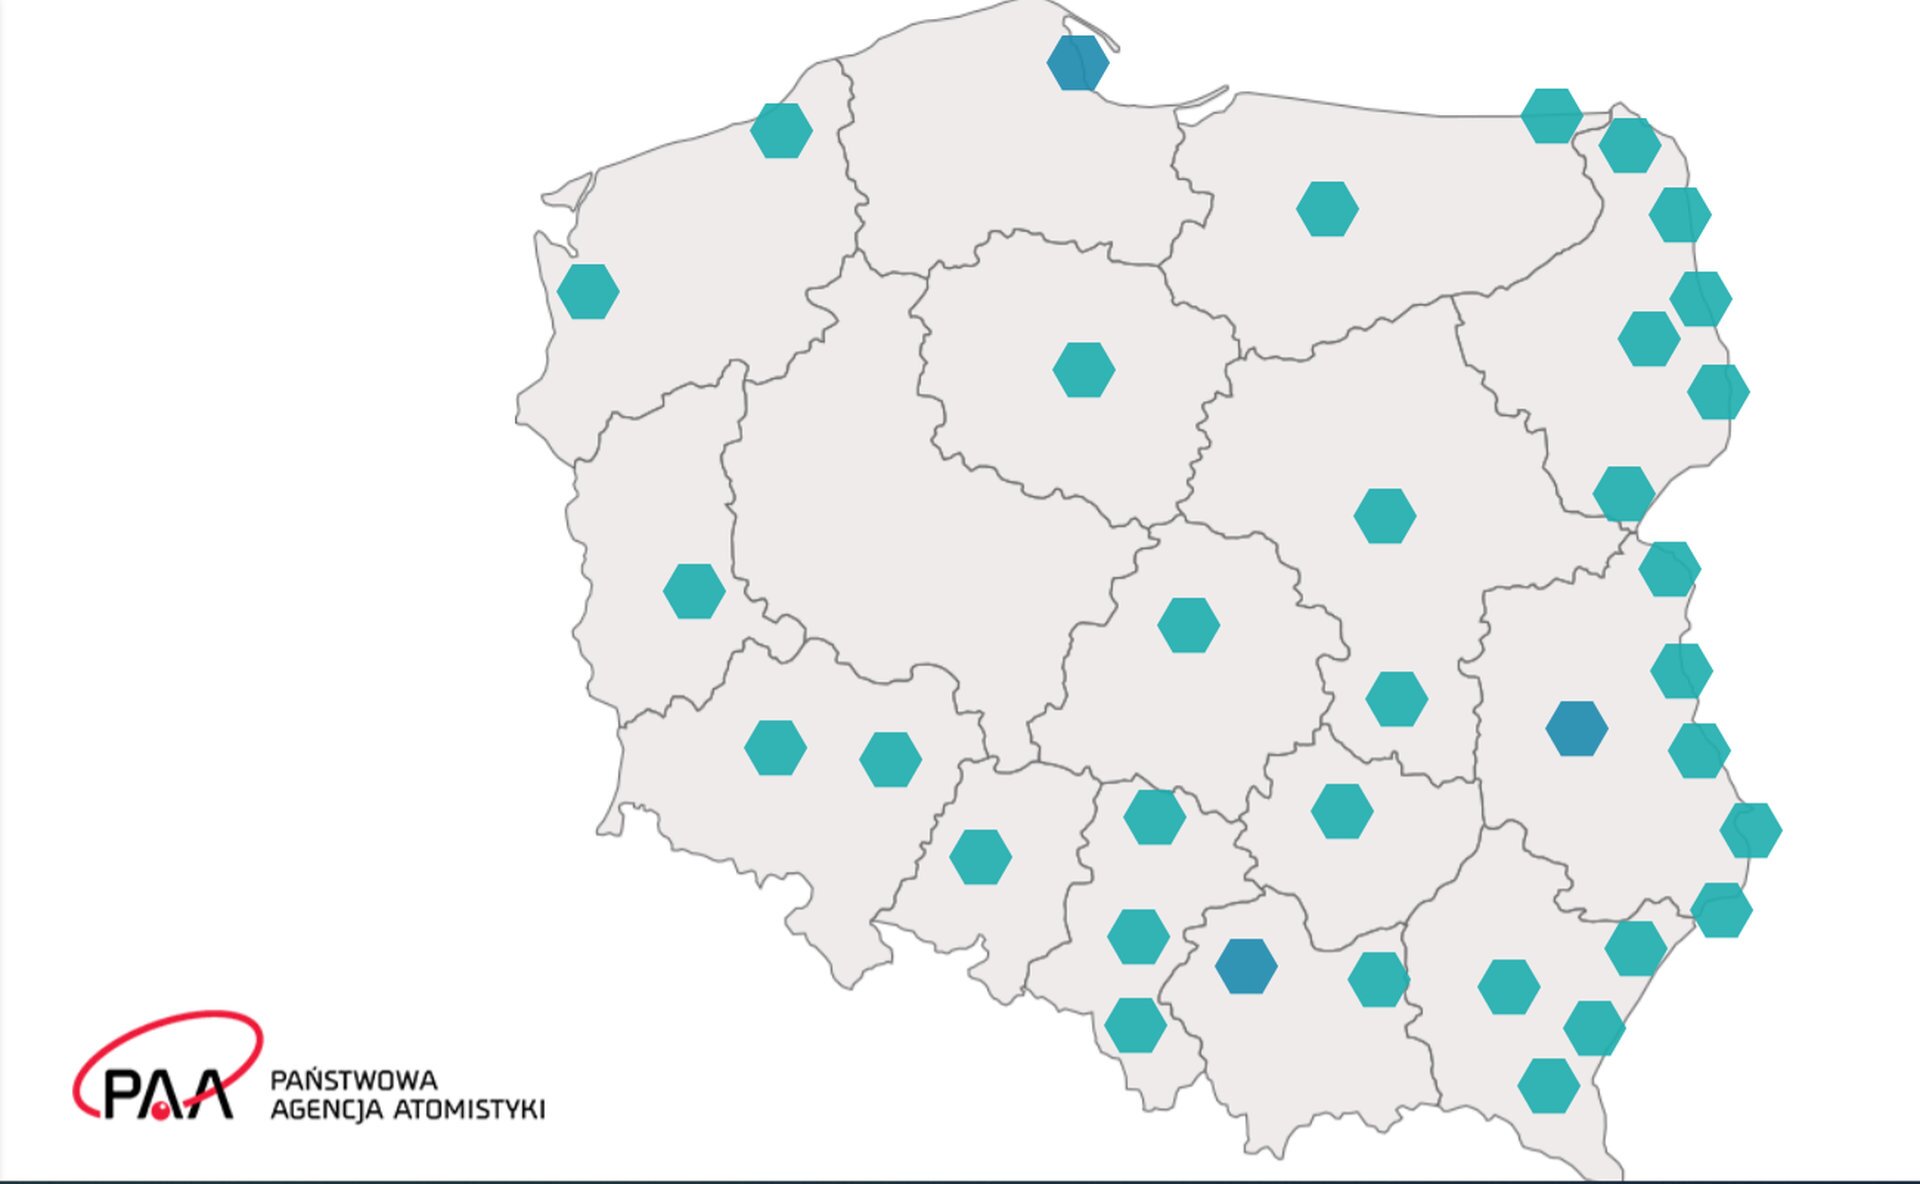 Rys. 7. Ilustracja przedstawia schematyczną mapę Polski z podziałem na województwa, w których obserwowana jest największa dawka promieniowania jonizującego jaką przyjmują mieszkańcy, wyrażona w mikrosiwertach na godzinę. Obszary, w których notowana jest największa dawka promieniowania jonizującego, zaznaczono zielononiebieskimi punktami. Większość terenów Polski wykazuje znikomą dawkę promieniowania. Najwięcej obszarów o podwyższonej dawce promieniowania jonizującego w granicach do jednej dziesiątej mikrosiwerta na godzinę znajduje się we wschodniej części kraju wzdłuż granicy z Obwodem Kaliningradzkim, Litwą i Białorusią oraz w województwach południowych. Północna i północno‑zachodnia część Polski wykazuje znikome dawki promieniowania jonizującego.